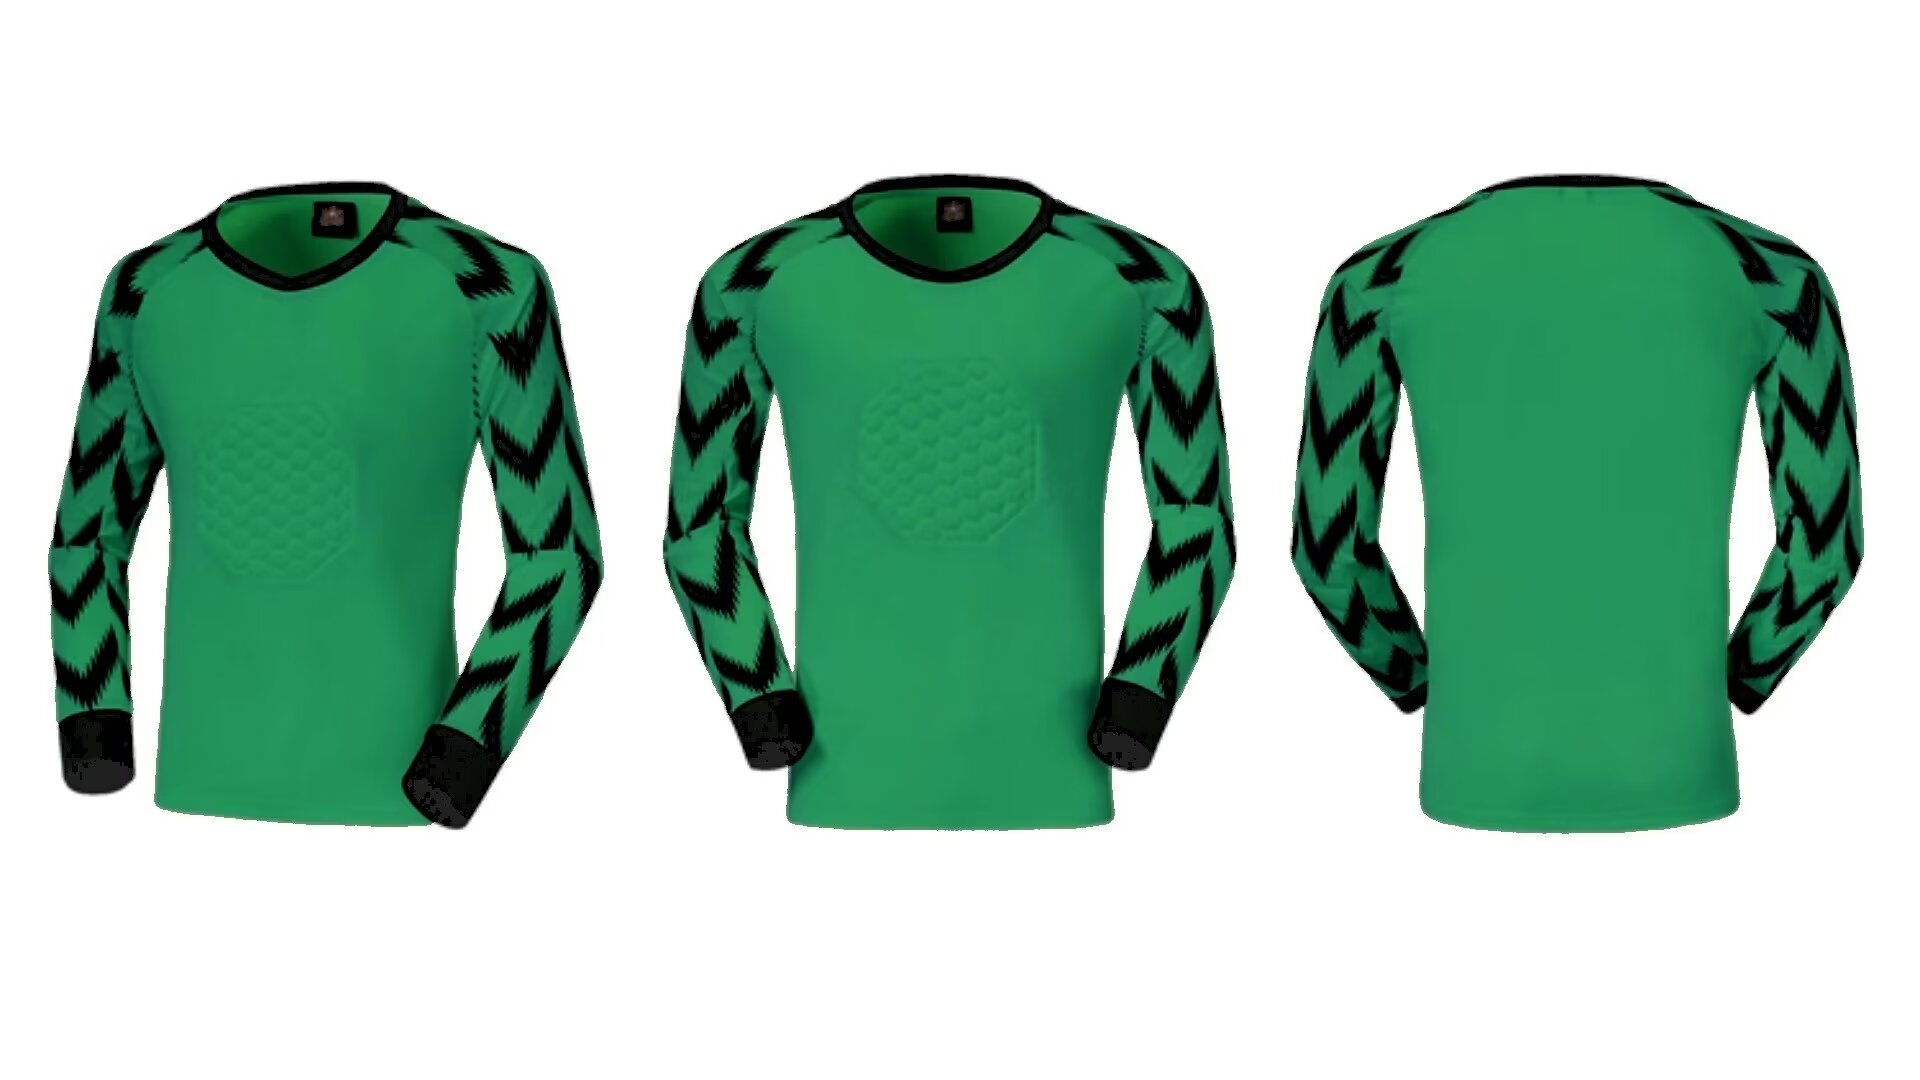 Goalkeeper Jersey 019 - Green